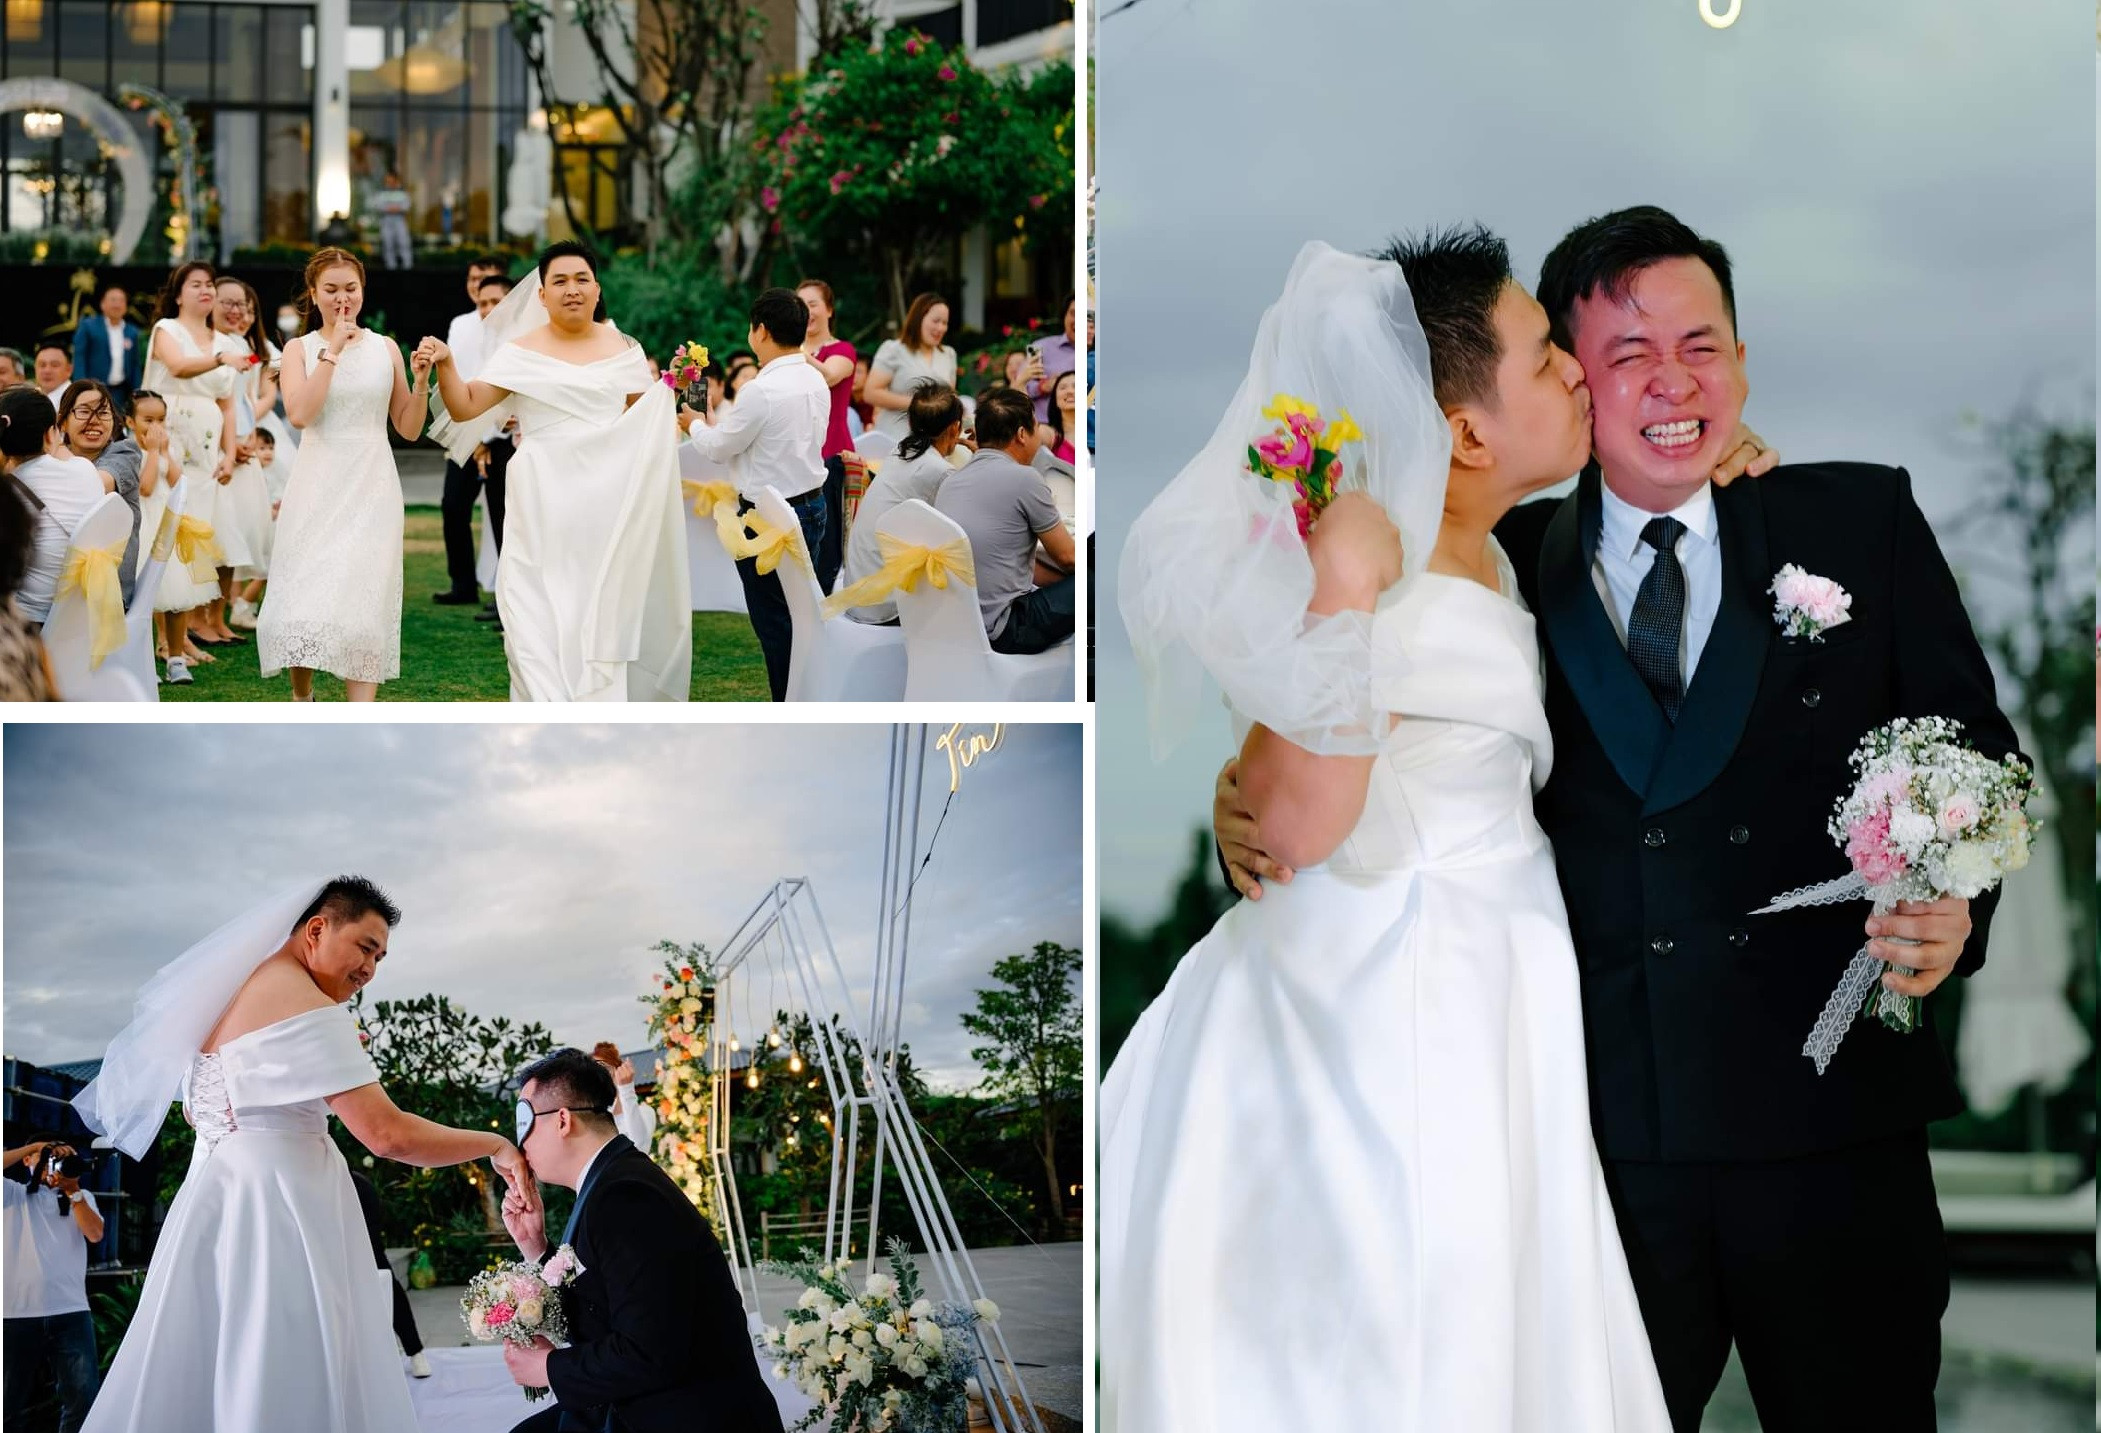 Bạn thân bay từ Mỹ về Ninh Thuận troll chú rể, cả đám cưới bùng nổ